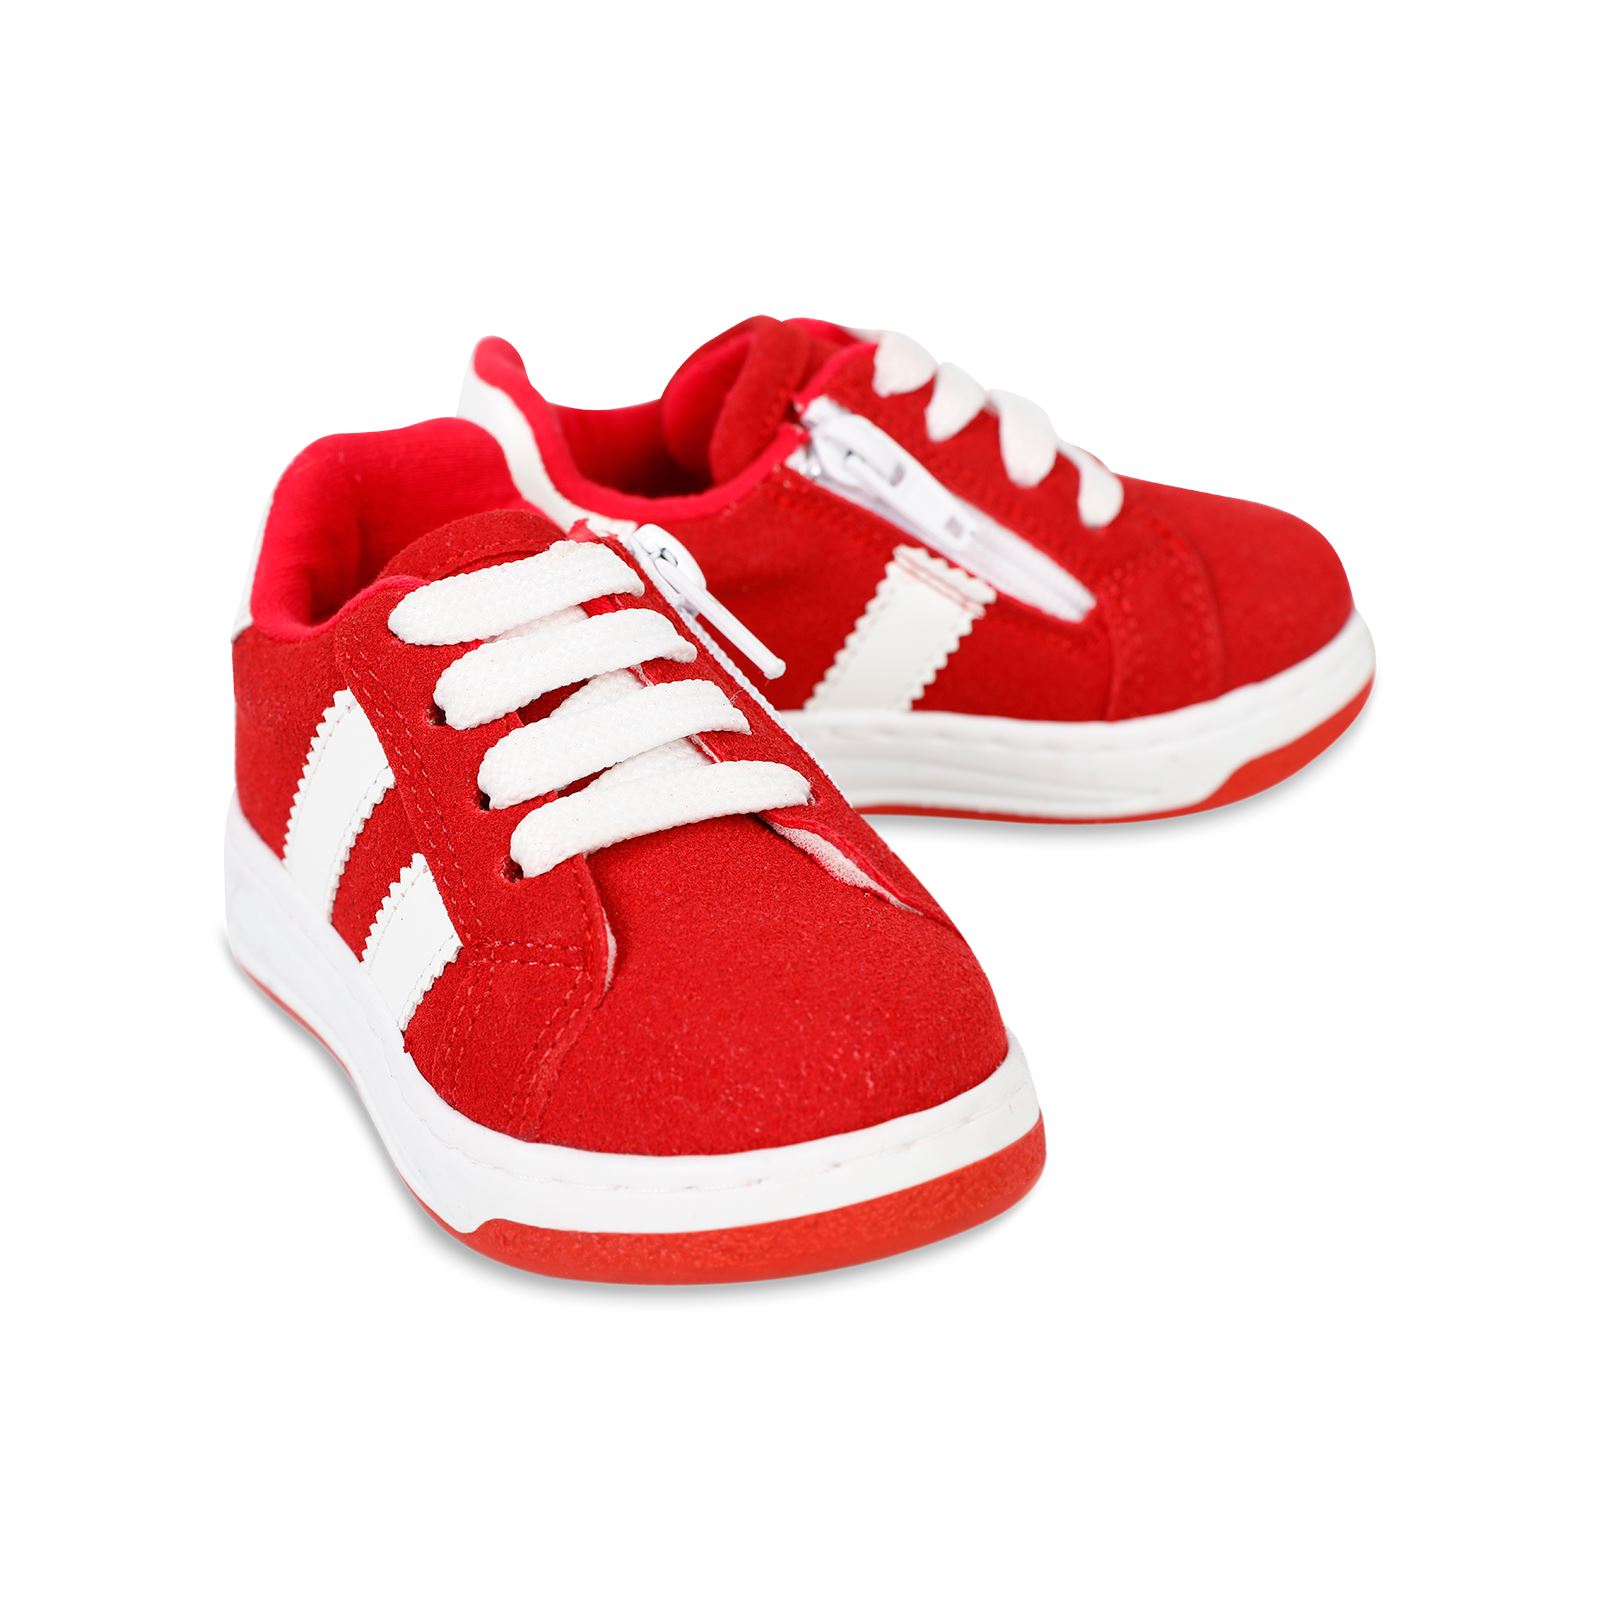 Civil Erkek Çocuk Spor Ayakkabı 21-25 Numara Kırmızı